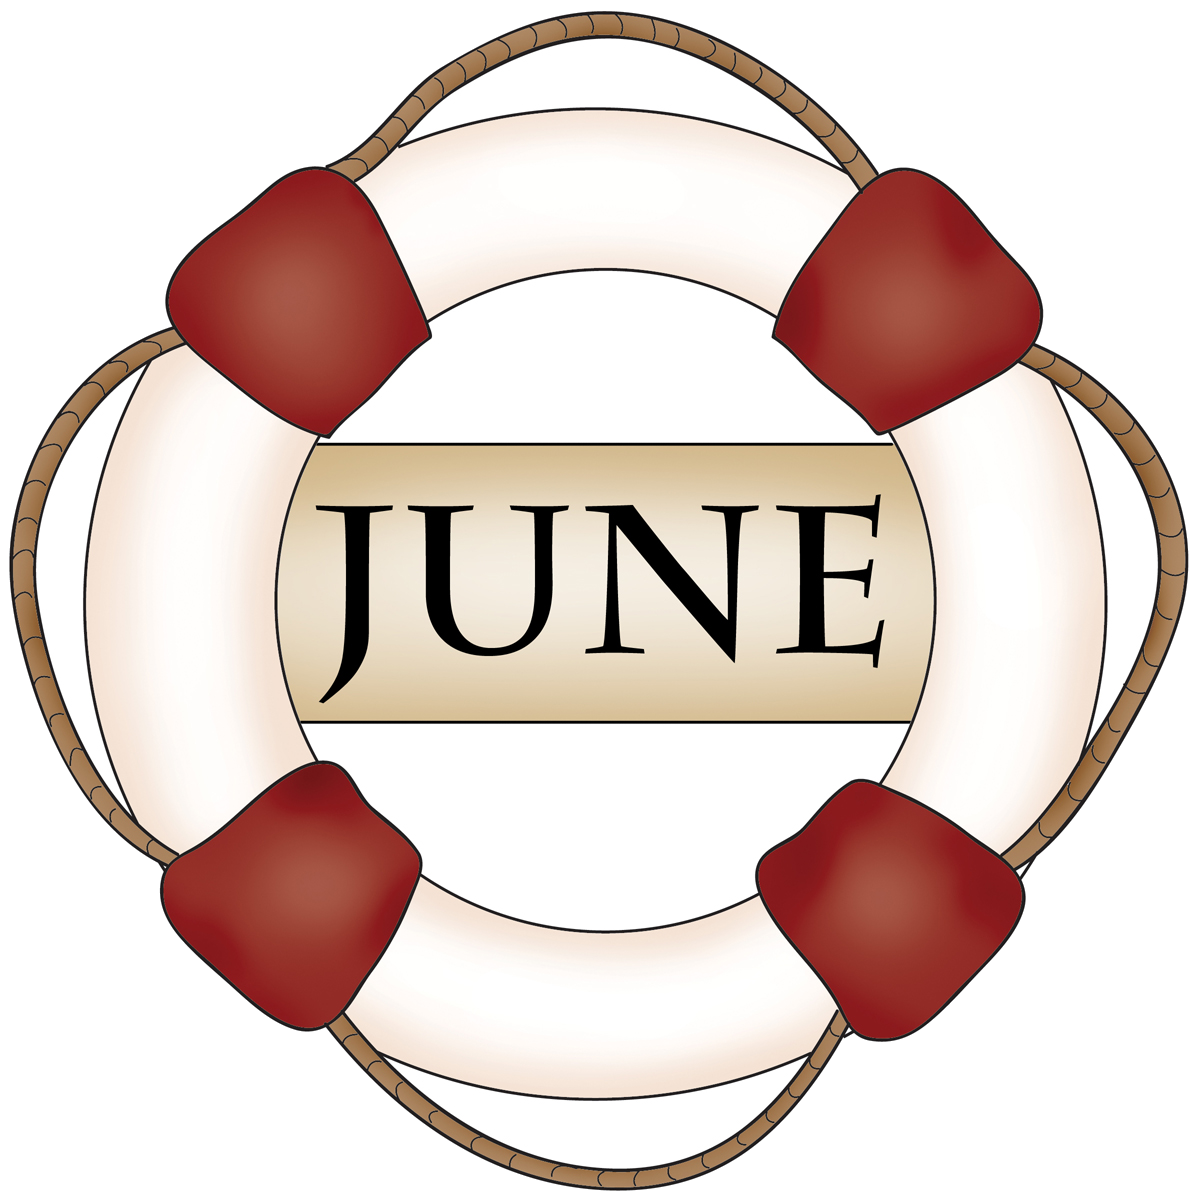 June Clipart Symbol June Symbol Transparent Free For Download On